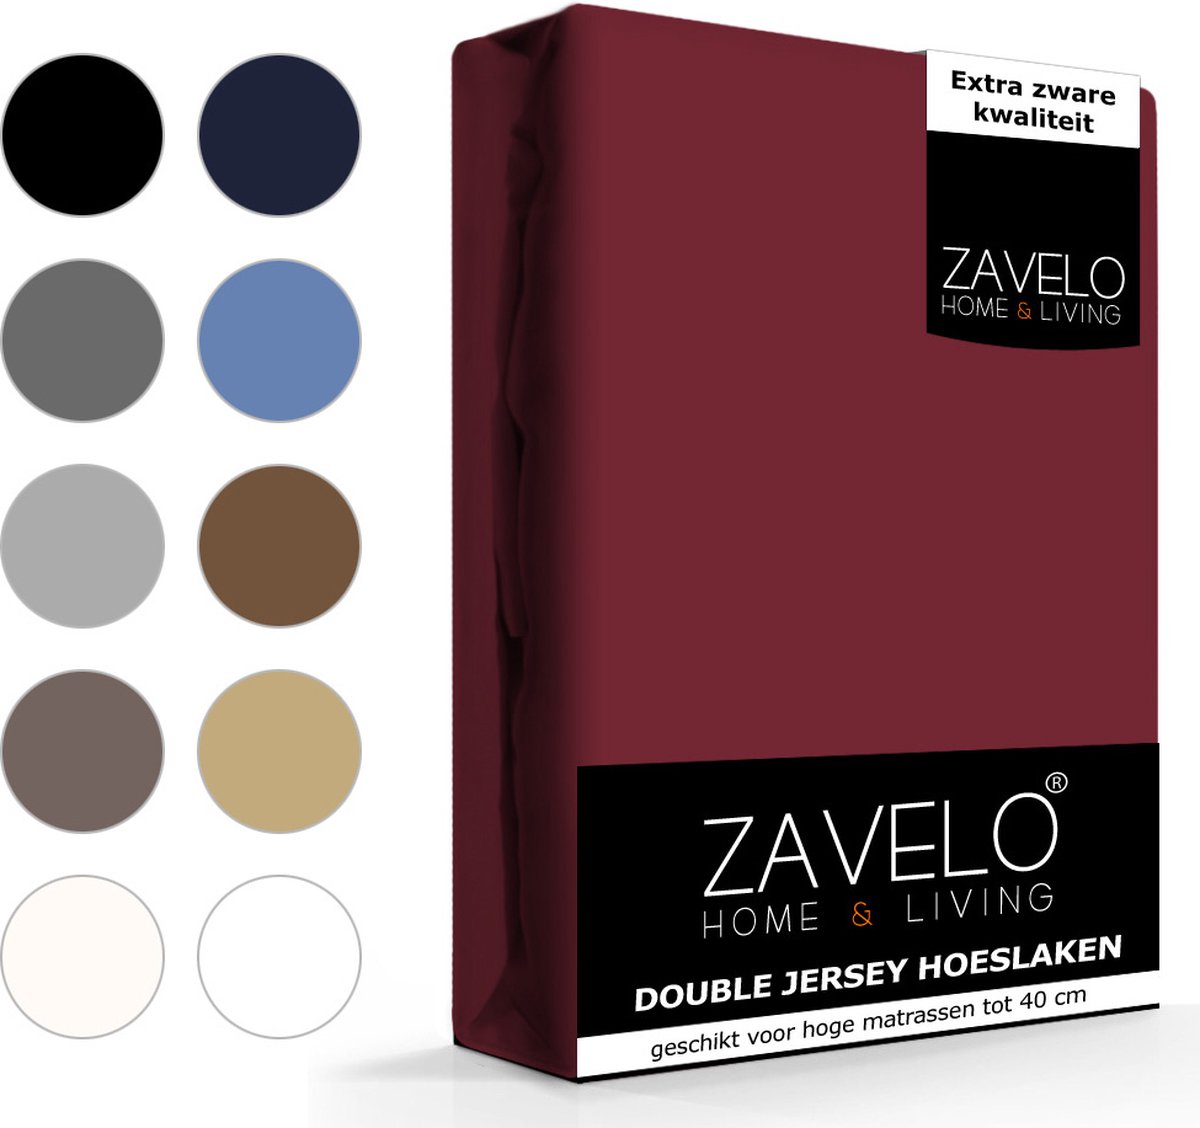 Slaaptextiel Zavelo Double Jersey Hoeslaken Bordeaux-lits-jumeaux (180x200 Cm) - Rood